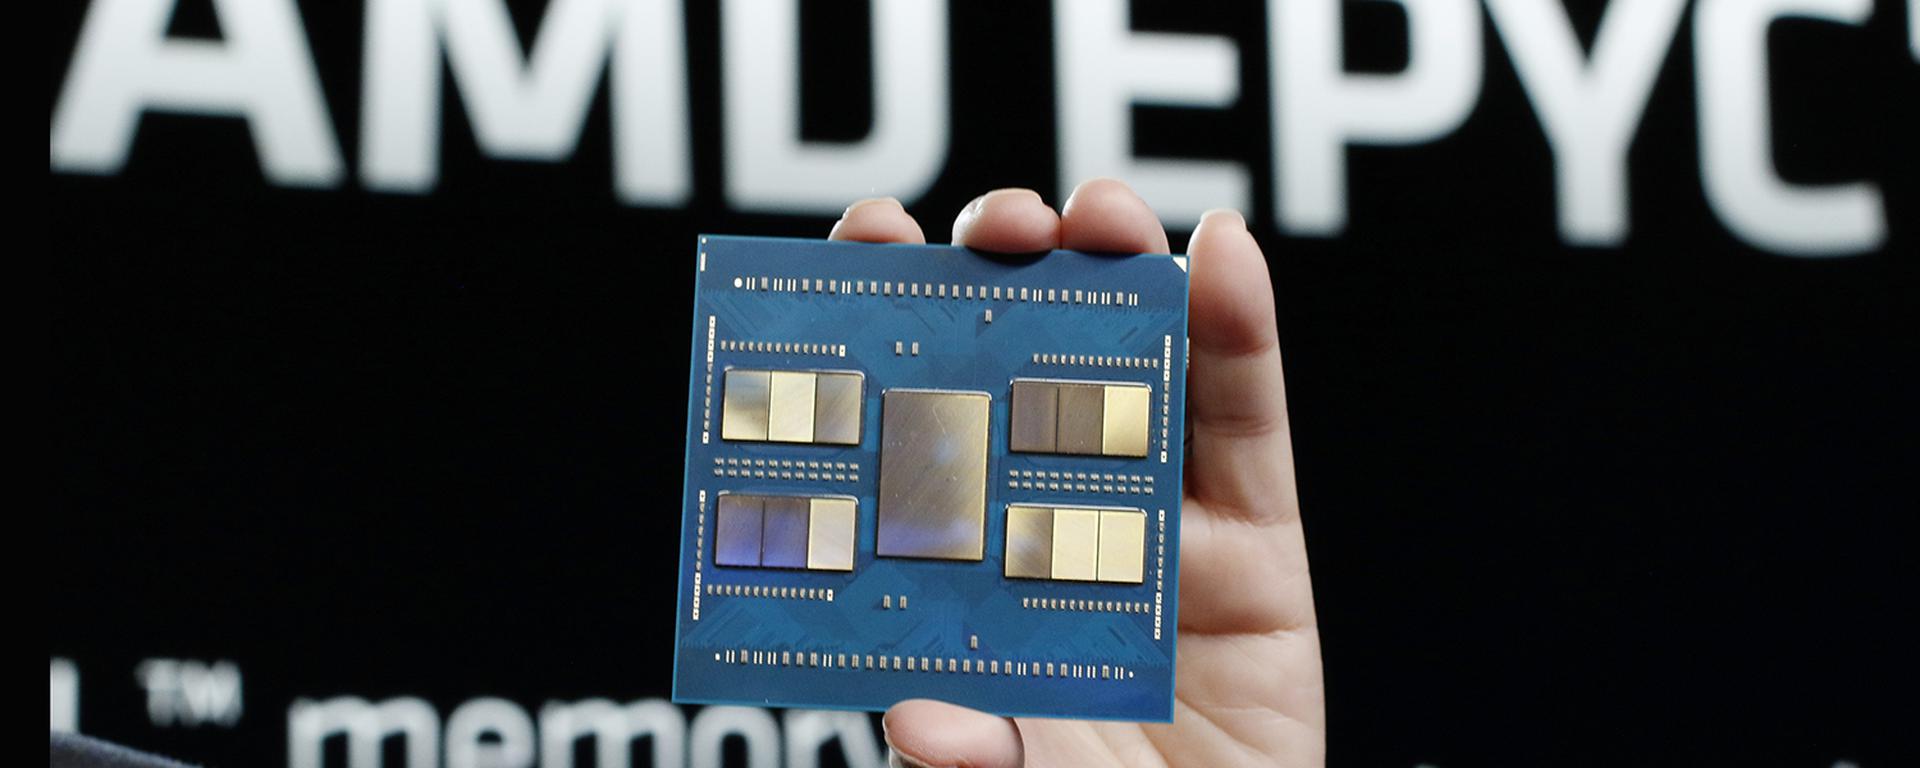 AMD sobre sus nuevos procesadores: “La necesidad de eficiencia energética seguirá creciendo”